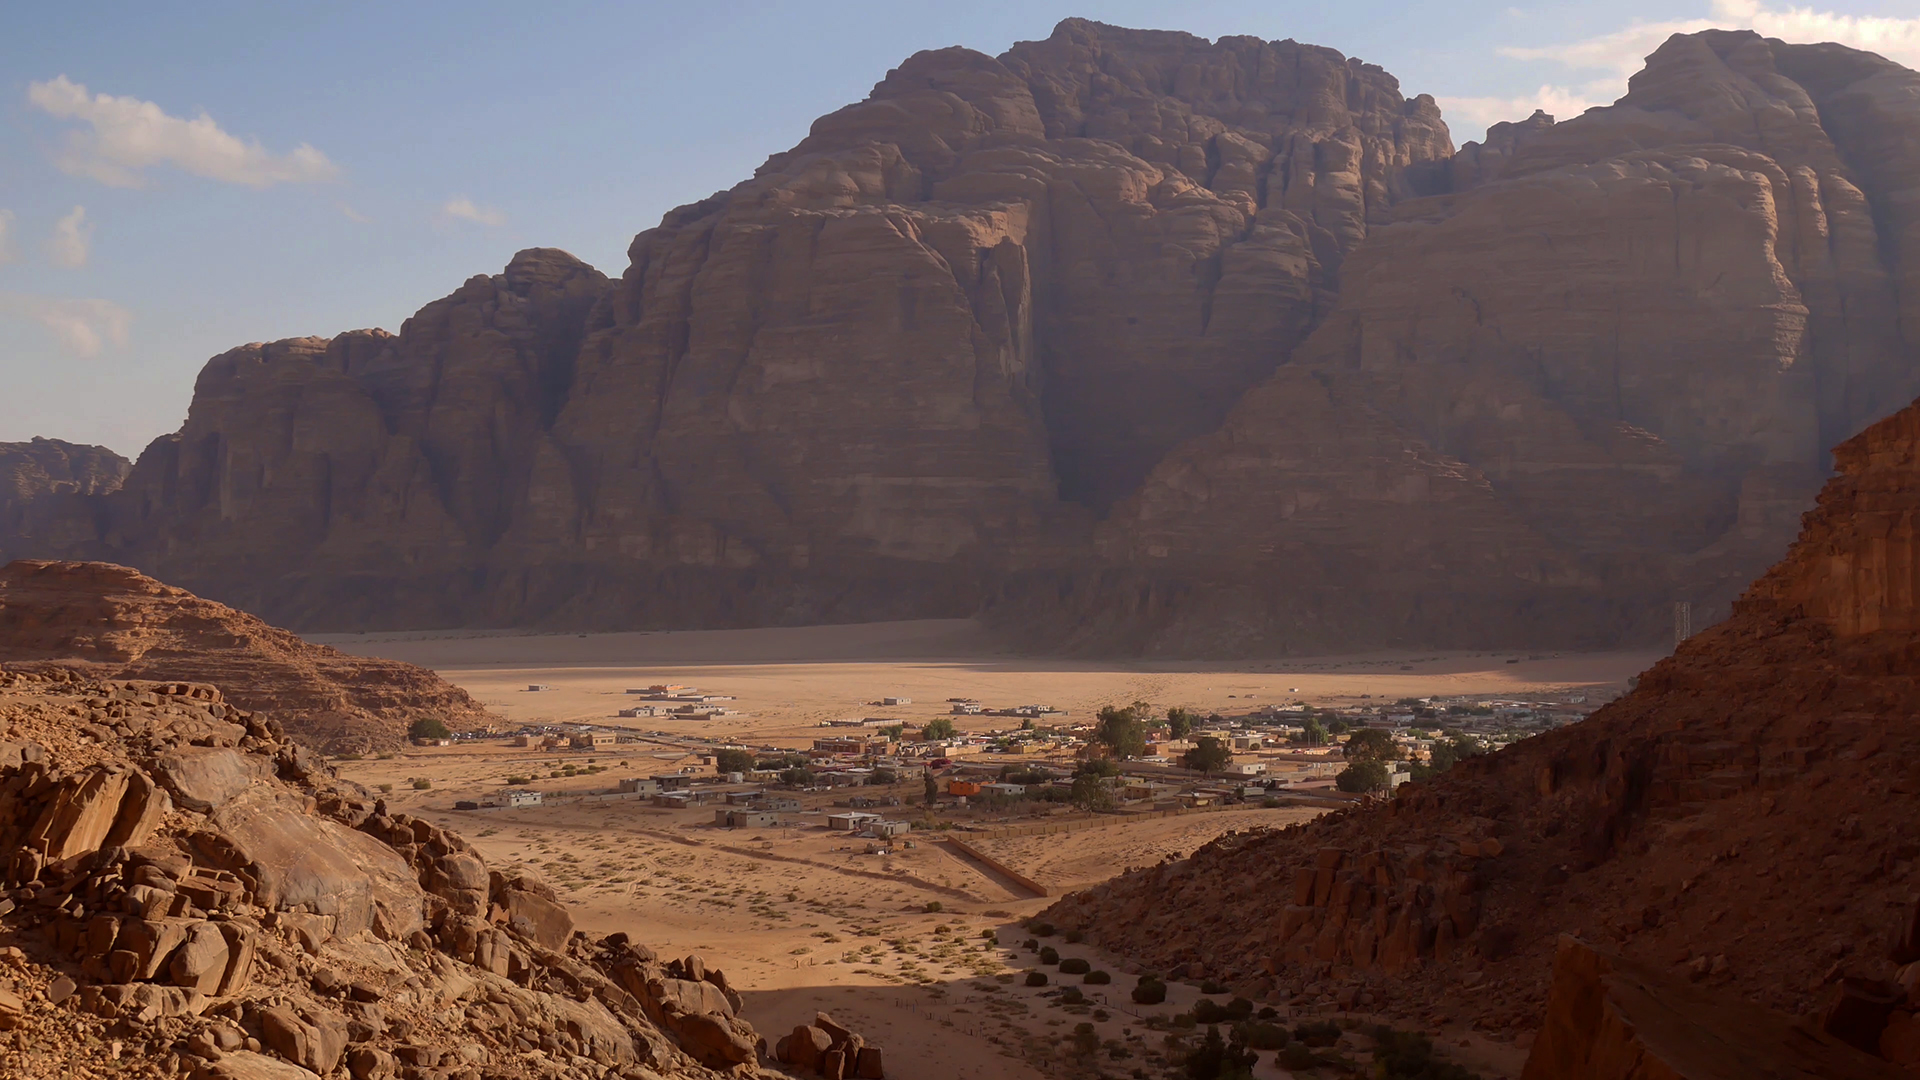 Un'immagine tratta dal documentario "Living Water" di Pavel Borecký raffigura un villaggio della Giordania in un'area semi-desertica